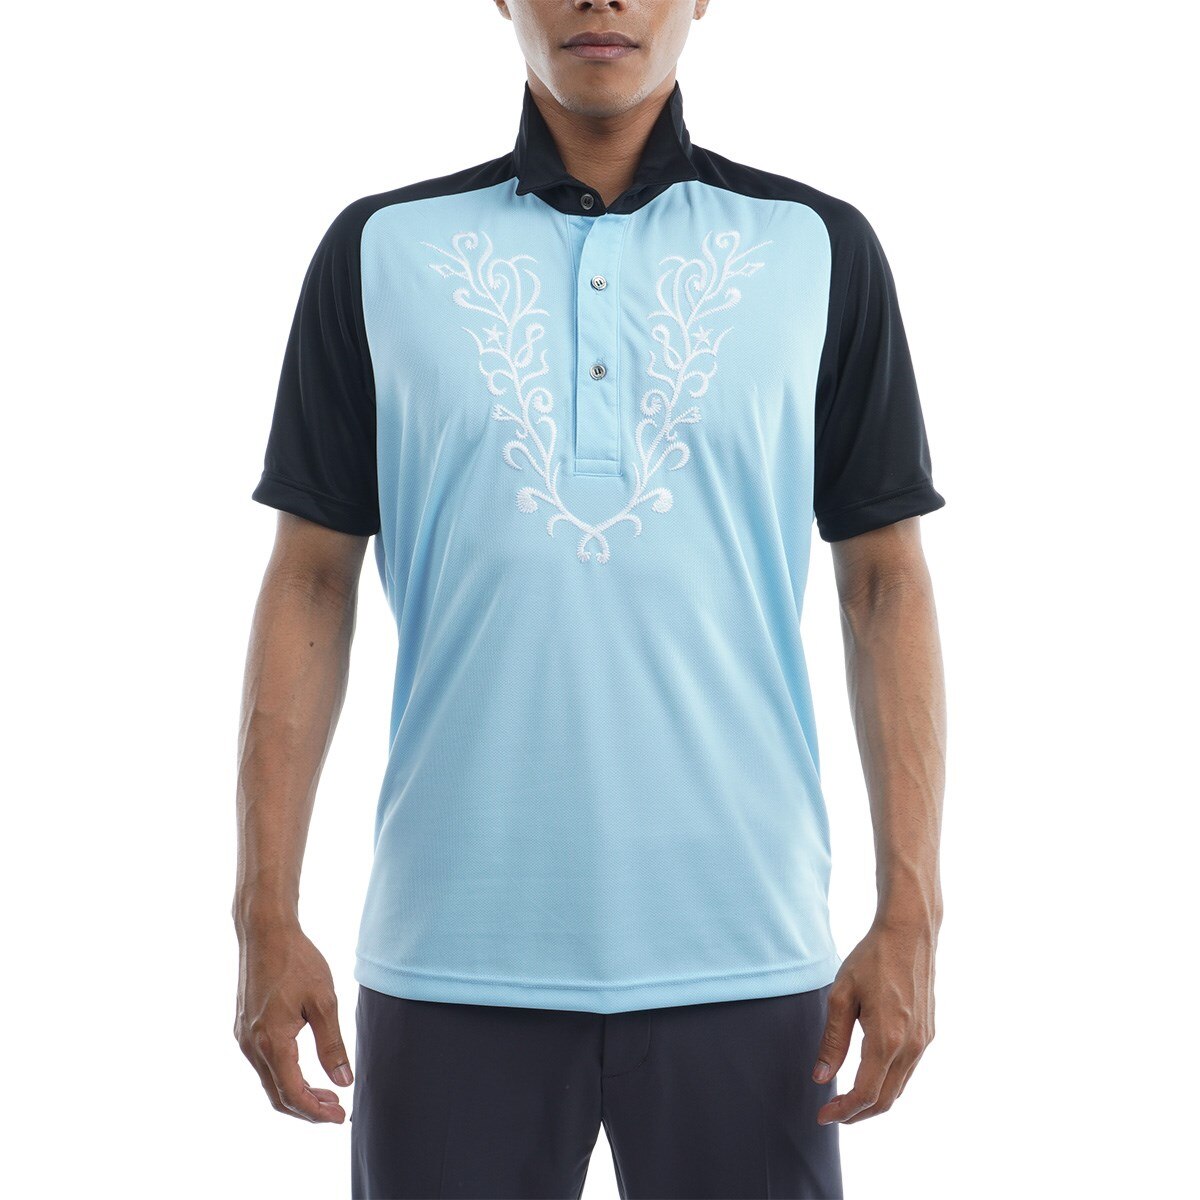 バッグライン×ロゴ刺繍デザイン 半袖ゴルフポロシャツ